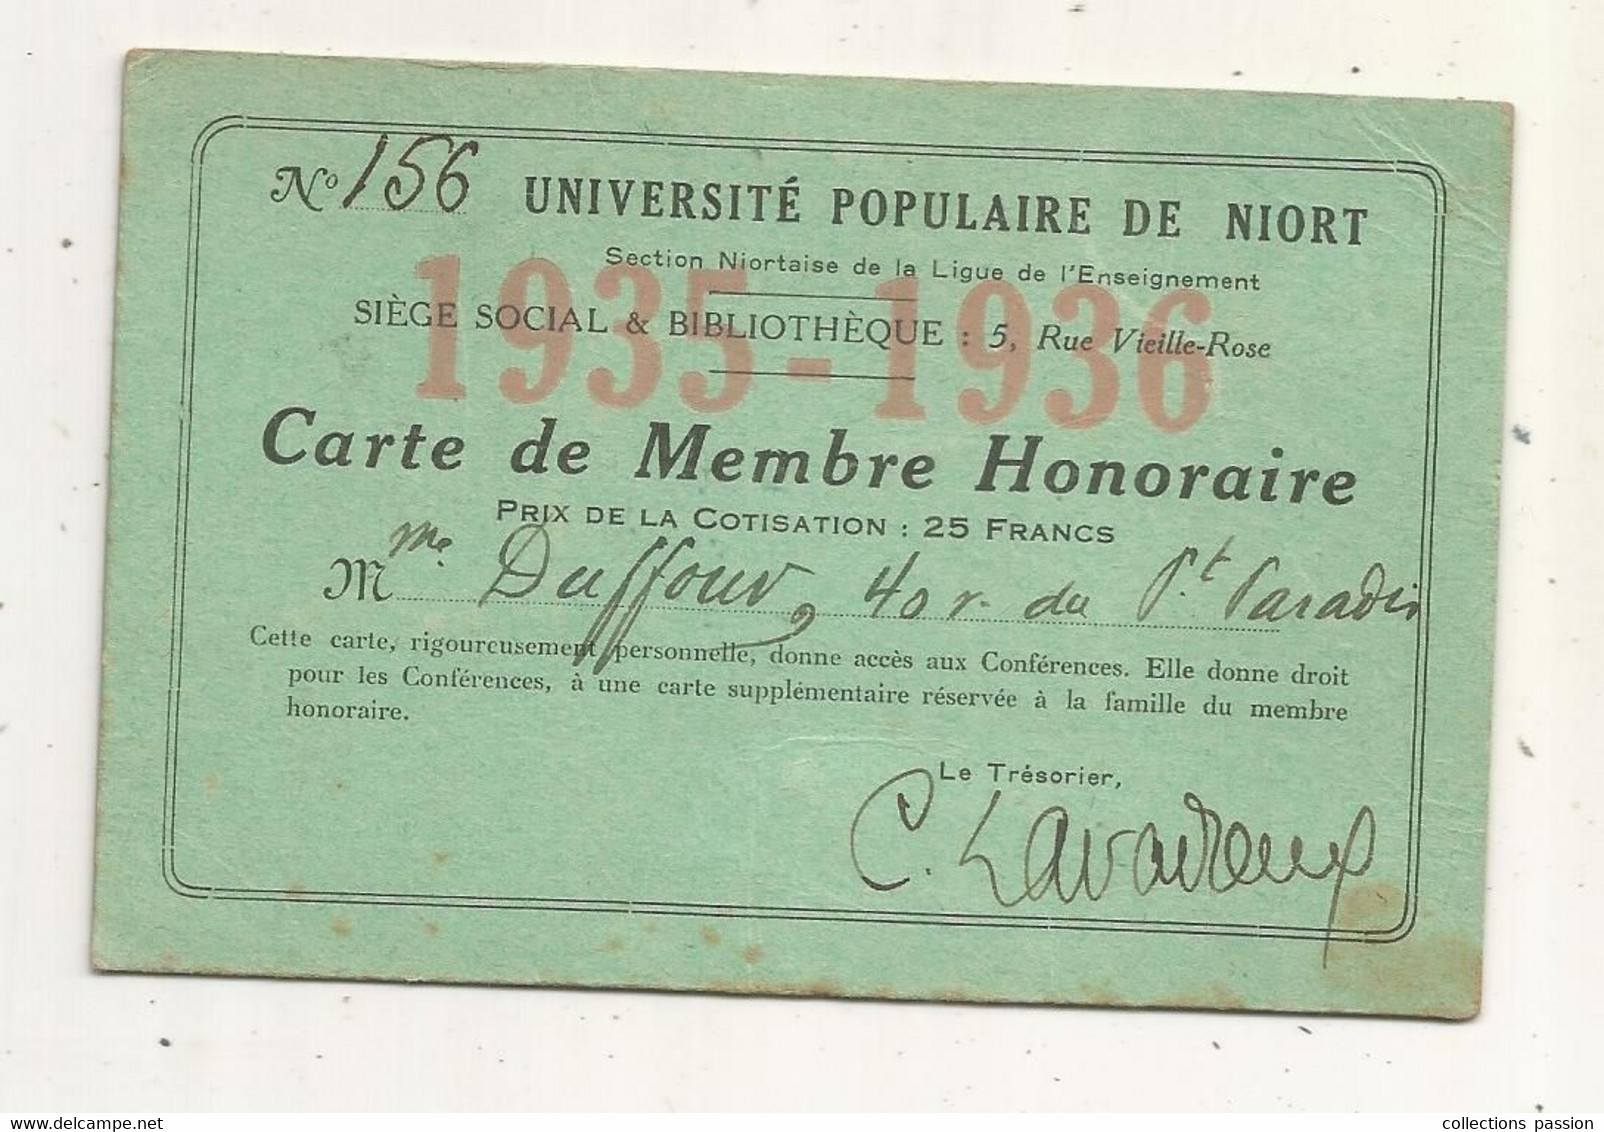 Carte De Membre Honoraire , UNIVERSITE POPULAIRE DE NIORT,1935-1936 - Cartes De Membre